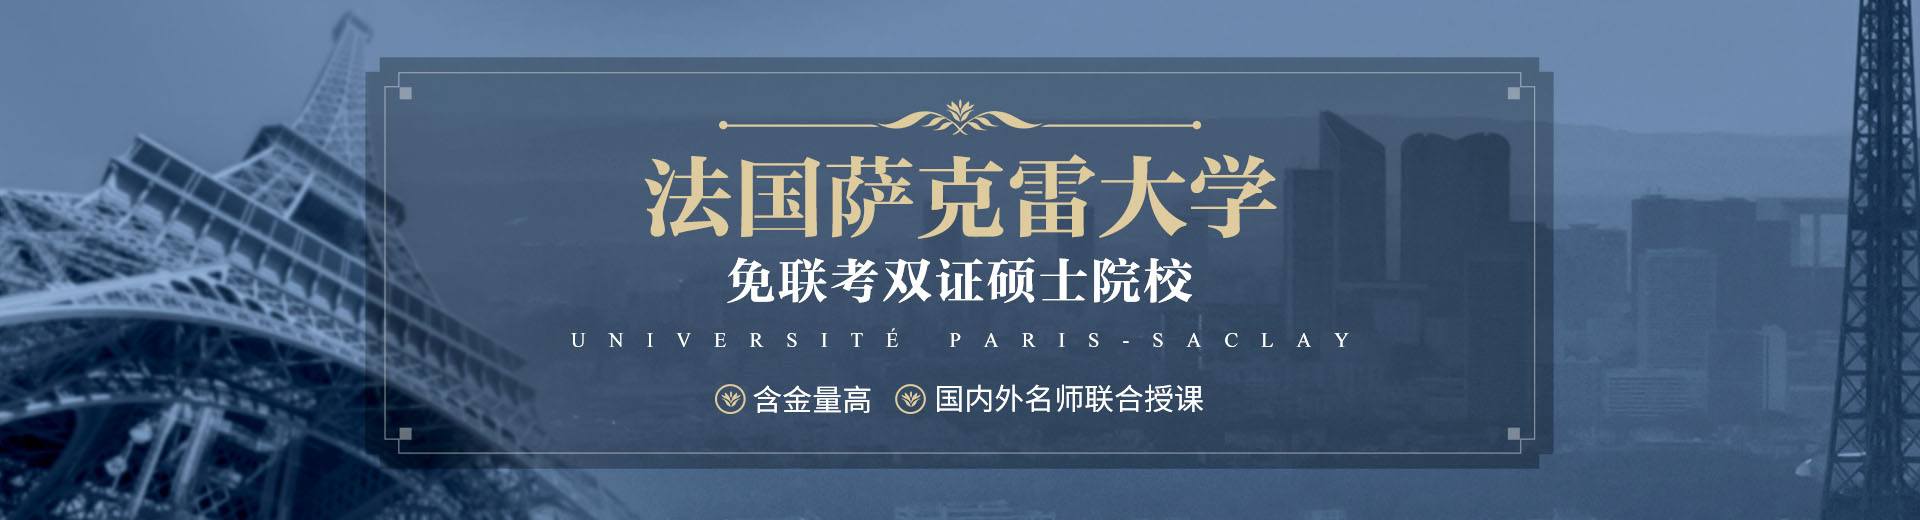 上海巴黎萨克雷大学